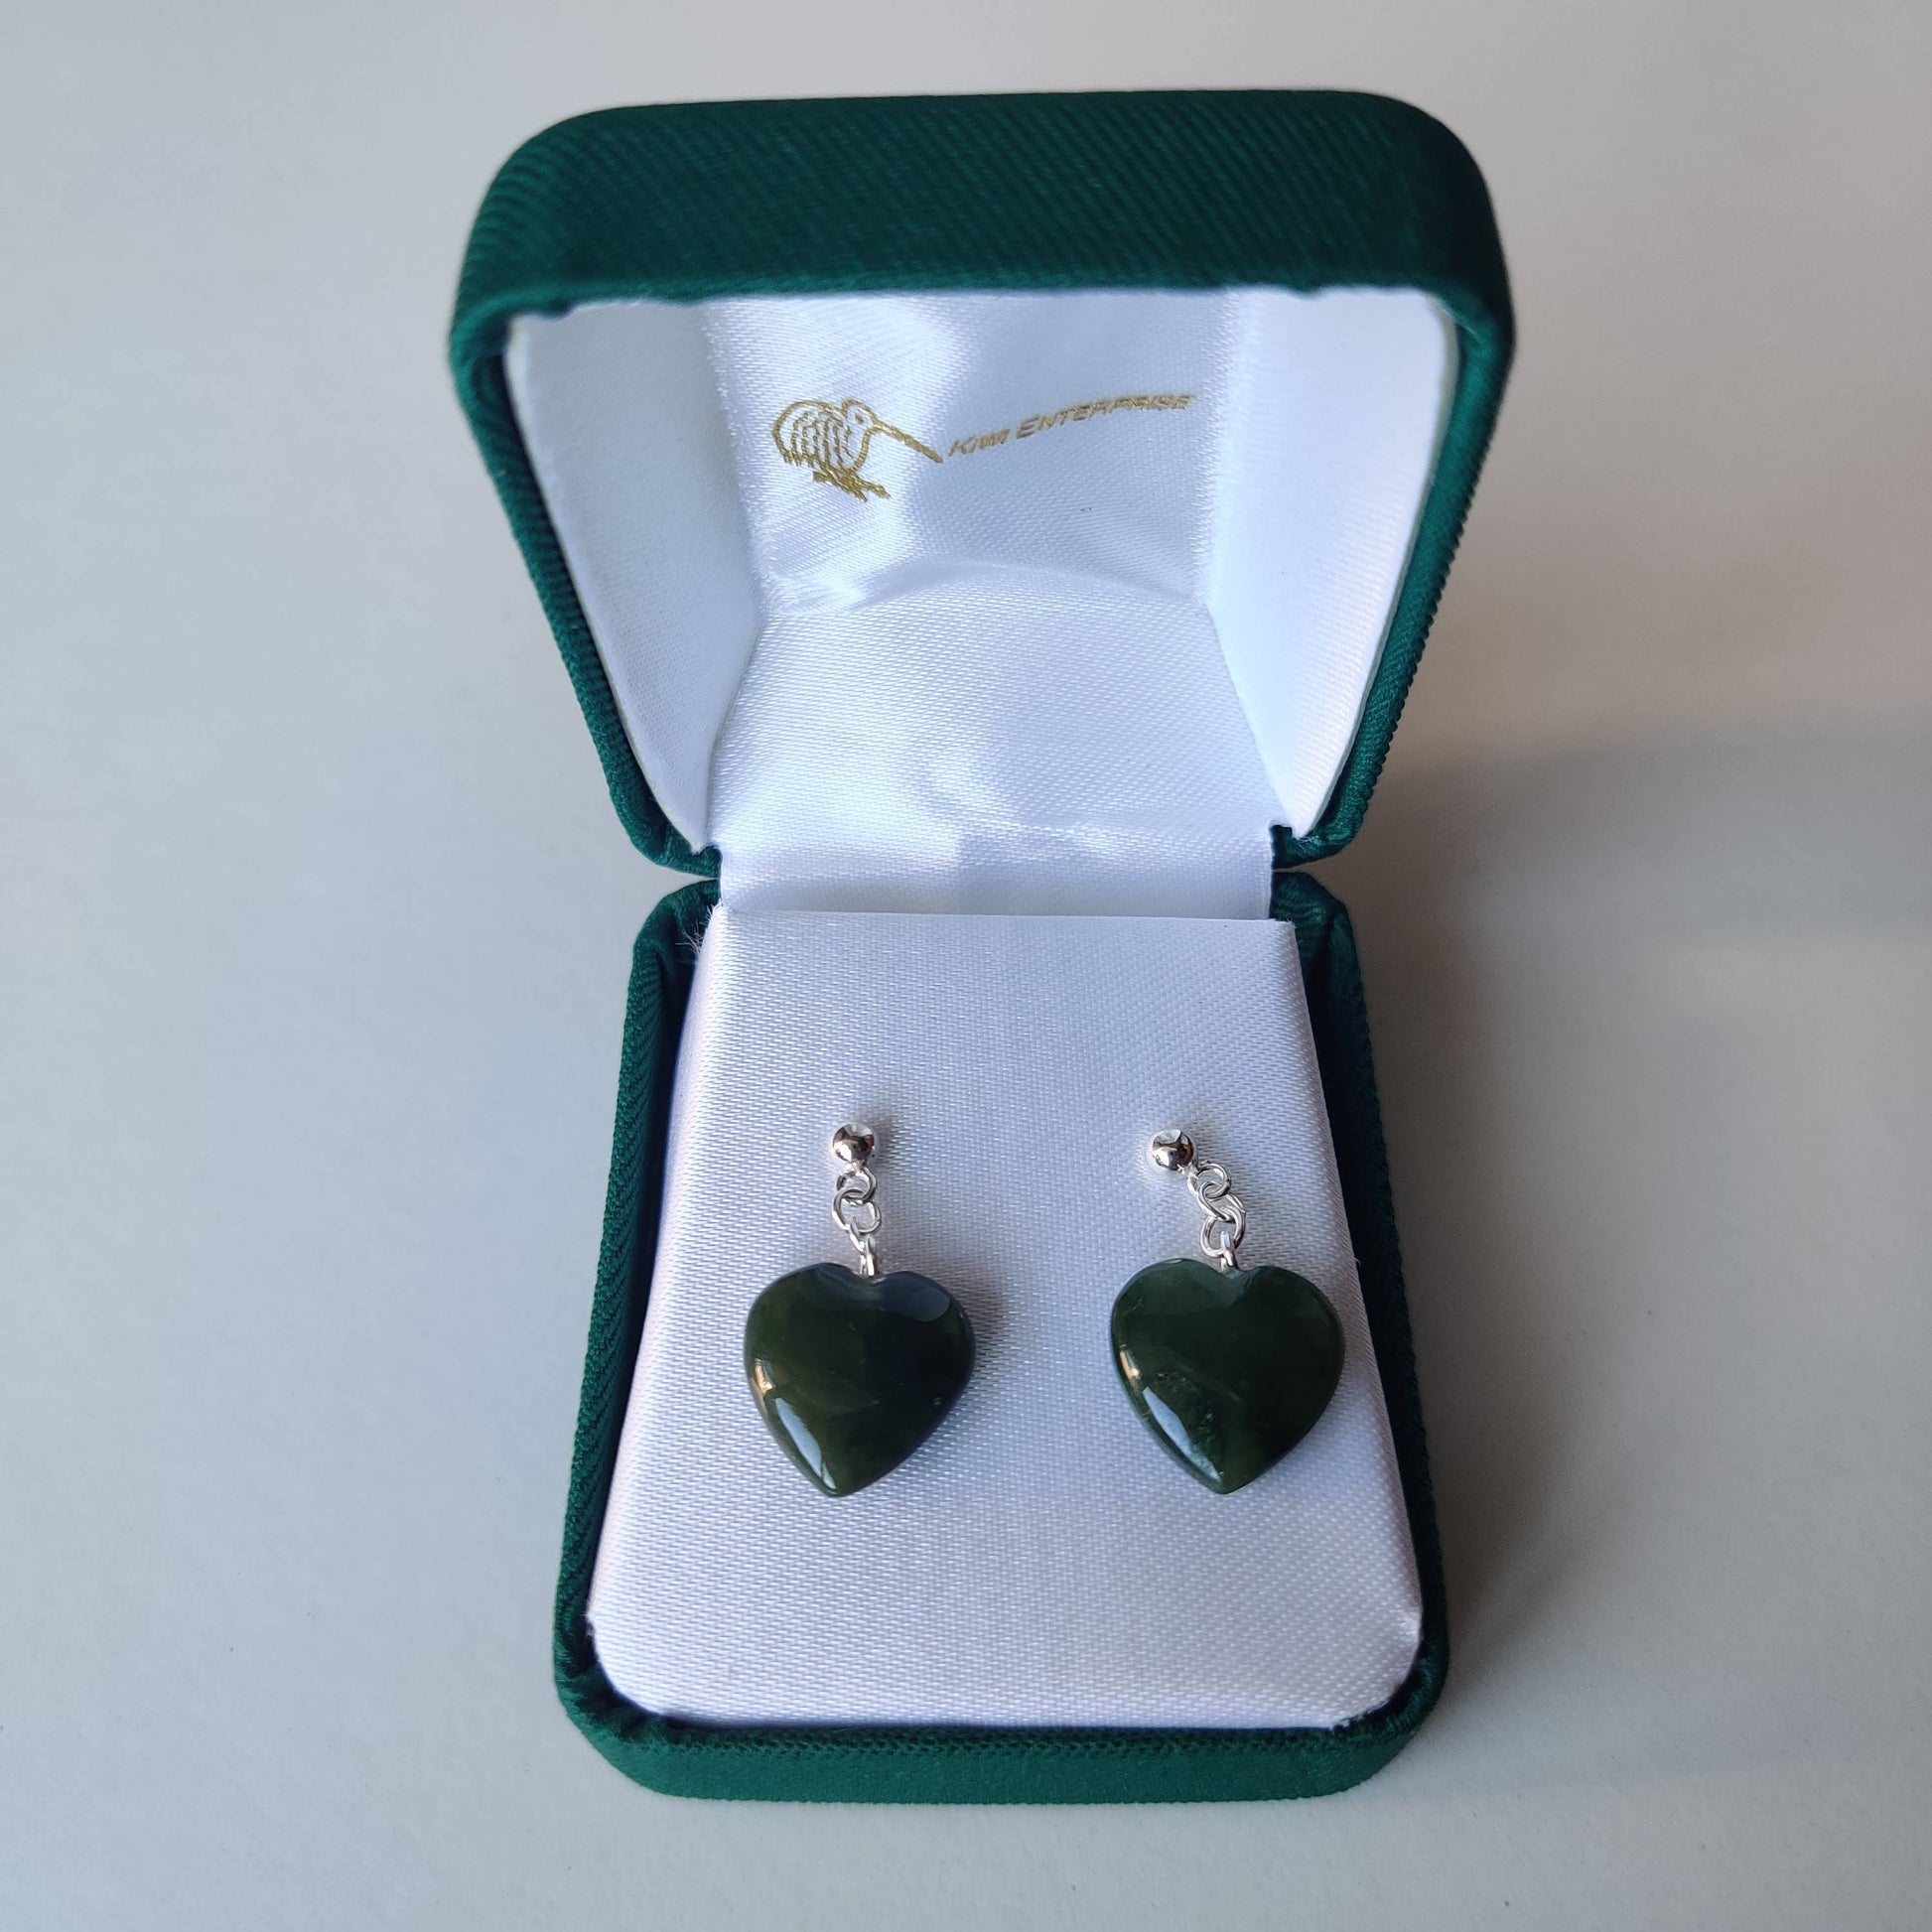 Heart Greenstone Earrings - Rivendell Shop